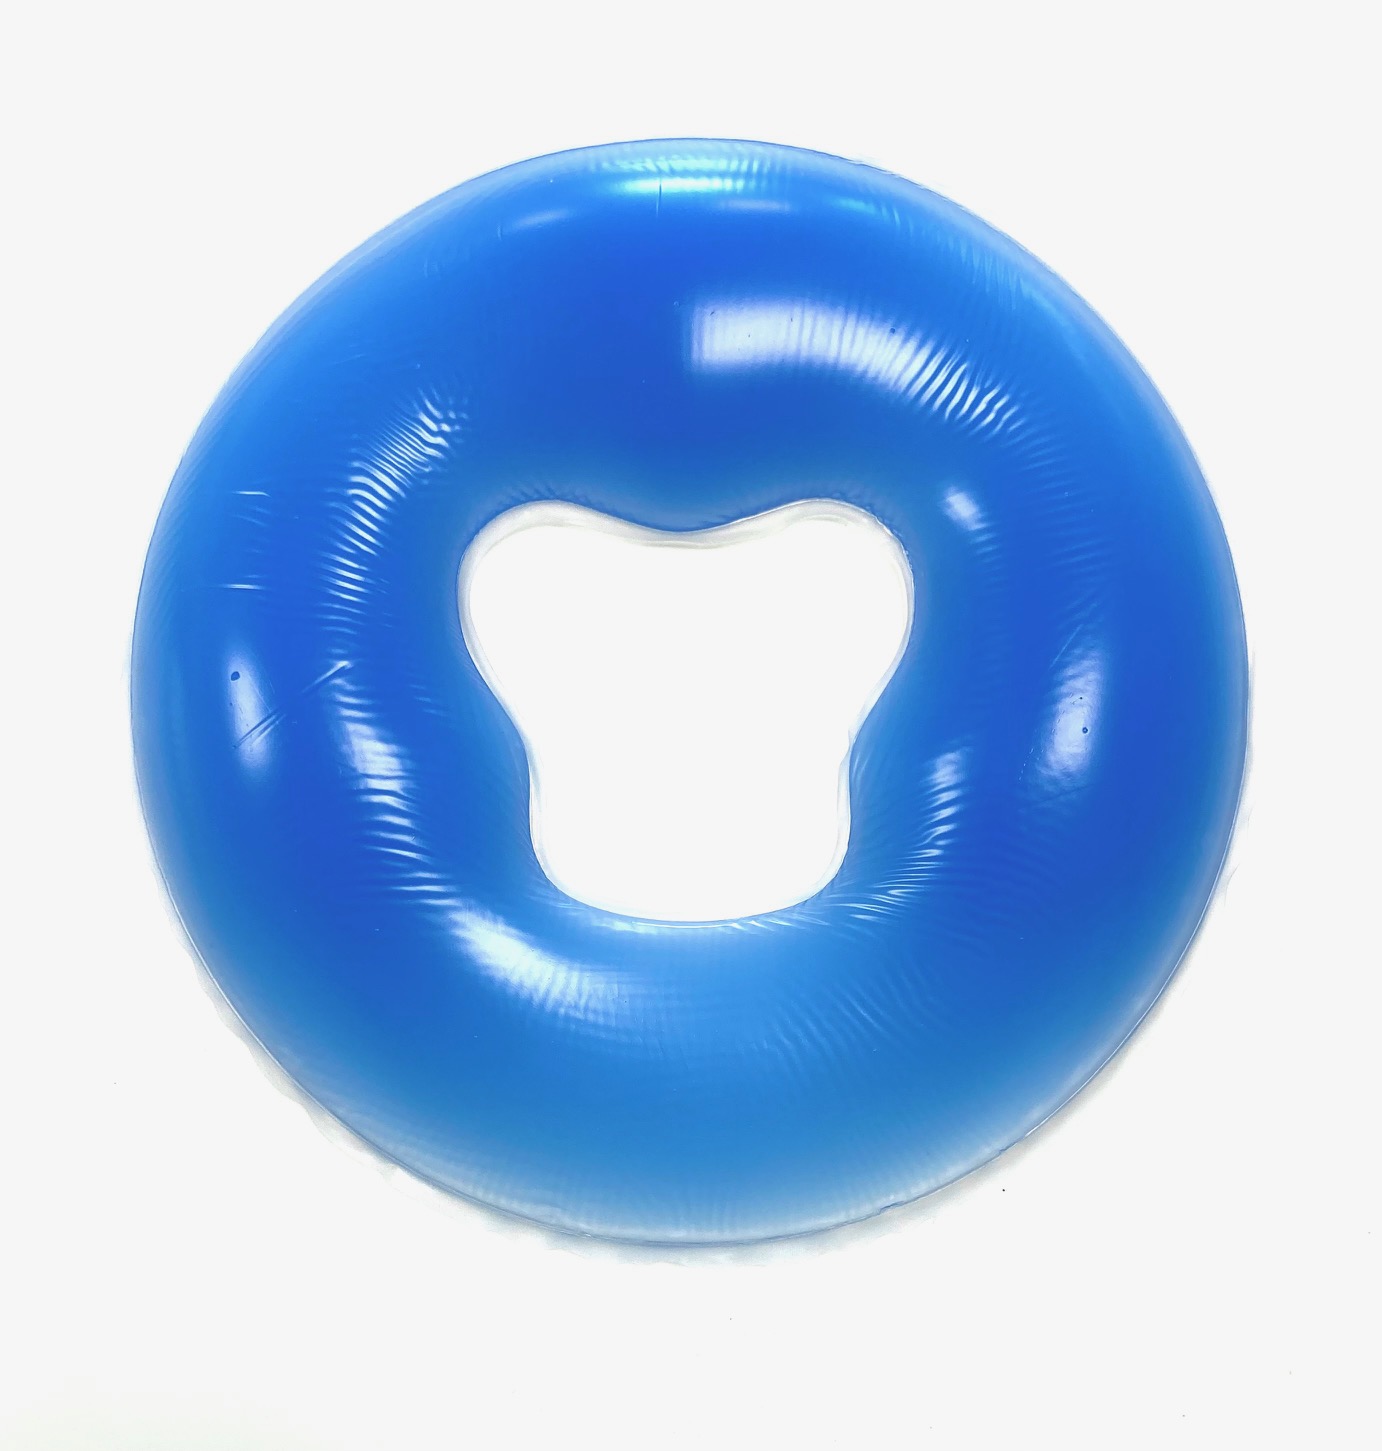 habys tablelya coussin oreiller-de-massage-en-silicone-souple-en-forme-de-donuts-coussin-de-spa-coussin-de-gel bleu